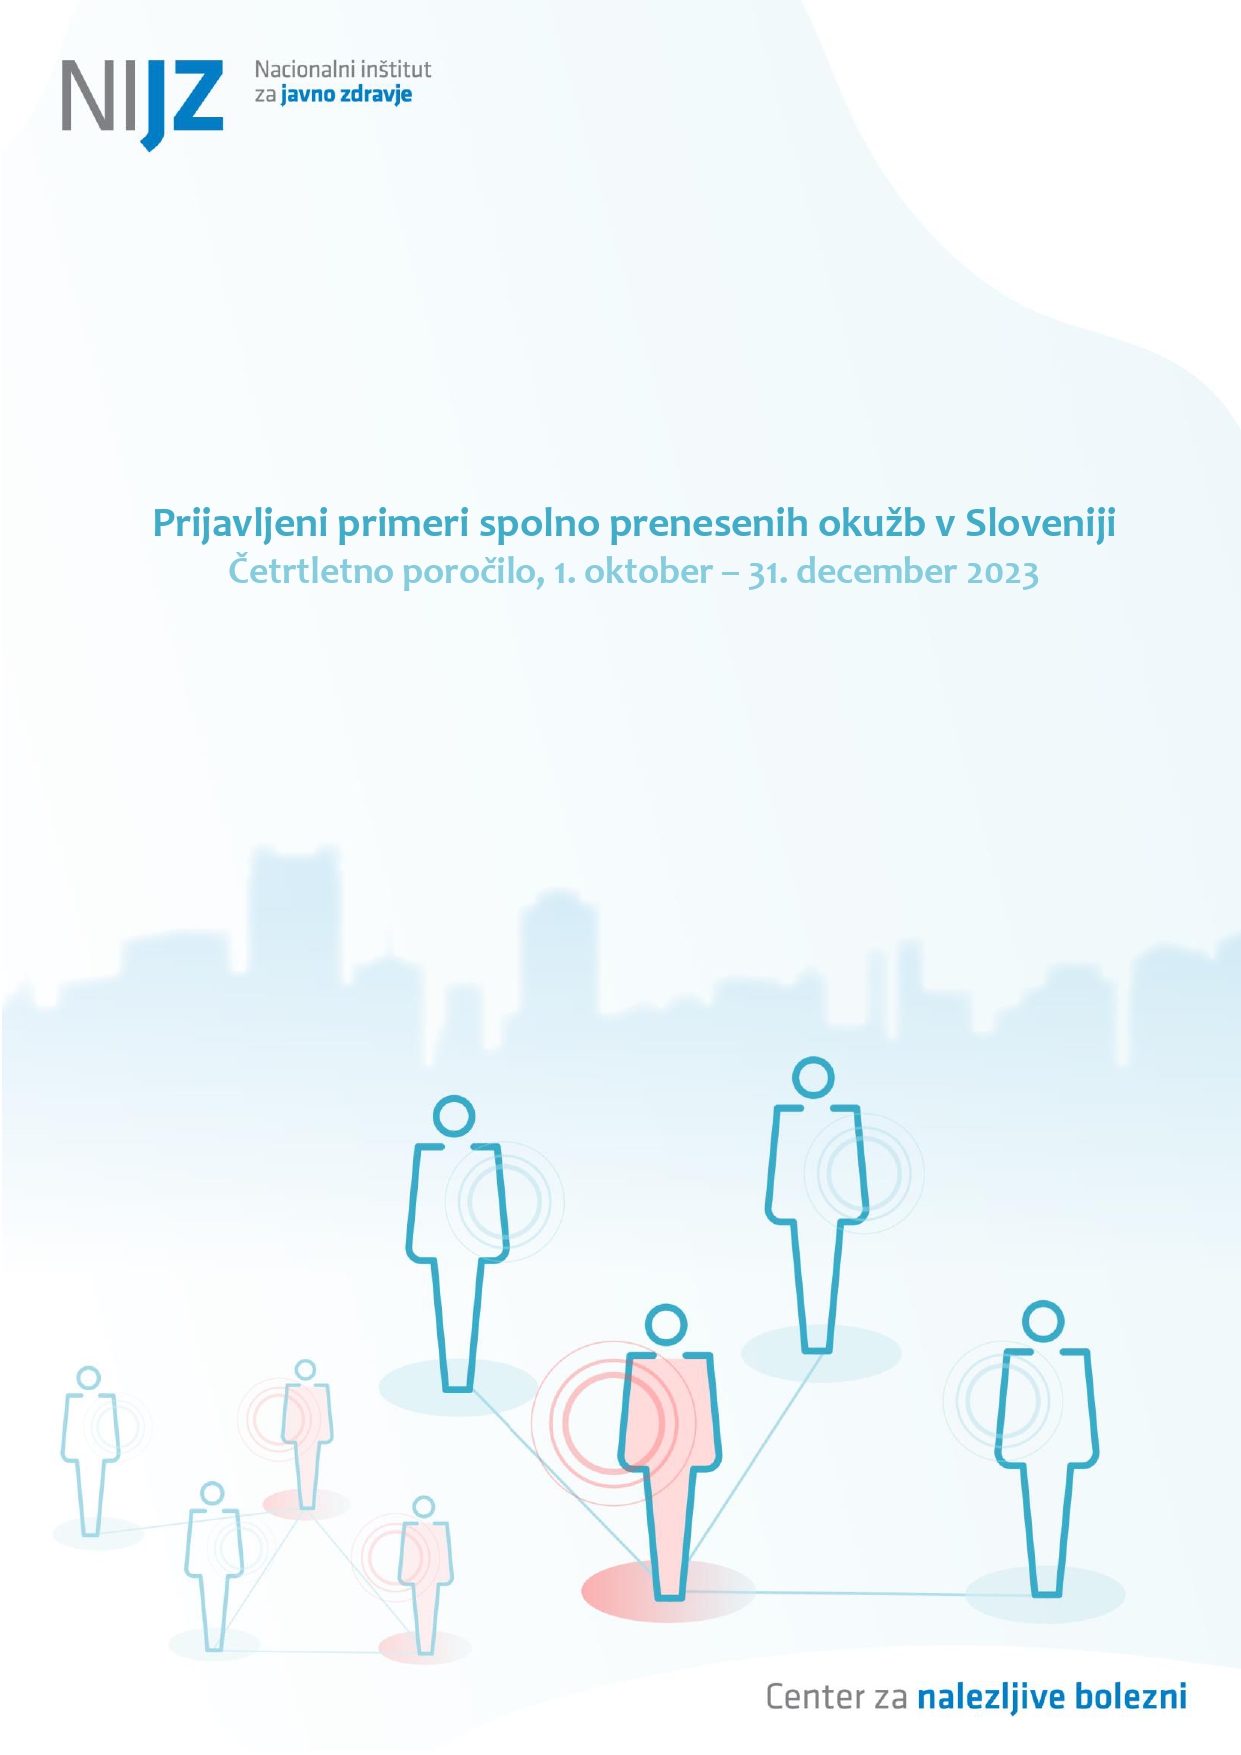 Prijavljeni primeri spolno prenesenih okužb v Sloveniji – četrtletno poročilo, 1. oktober – 31. december 2023